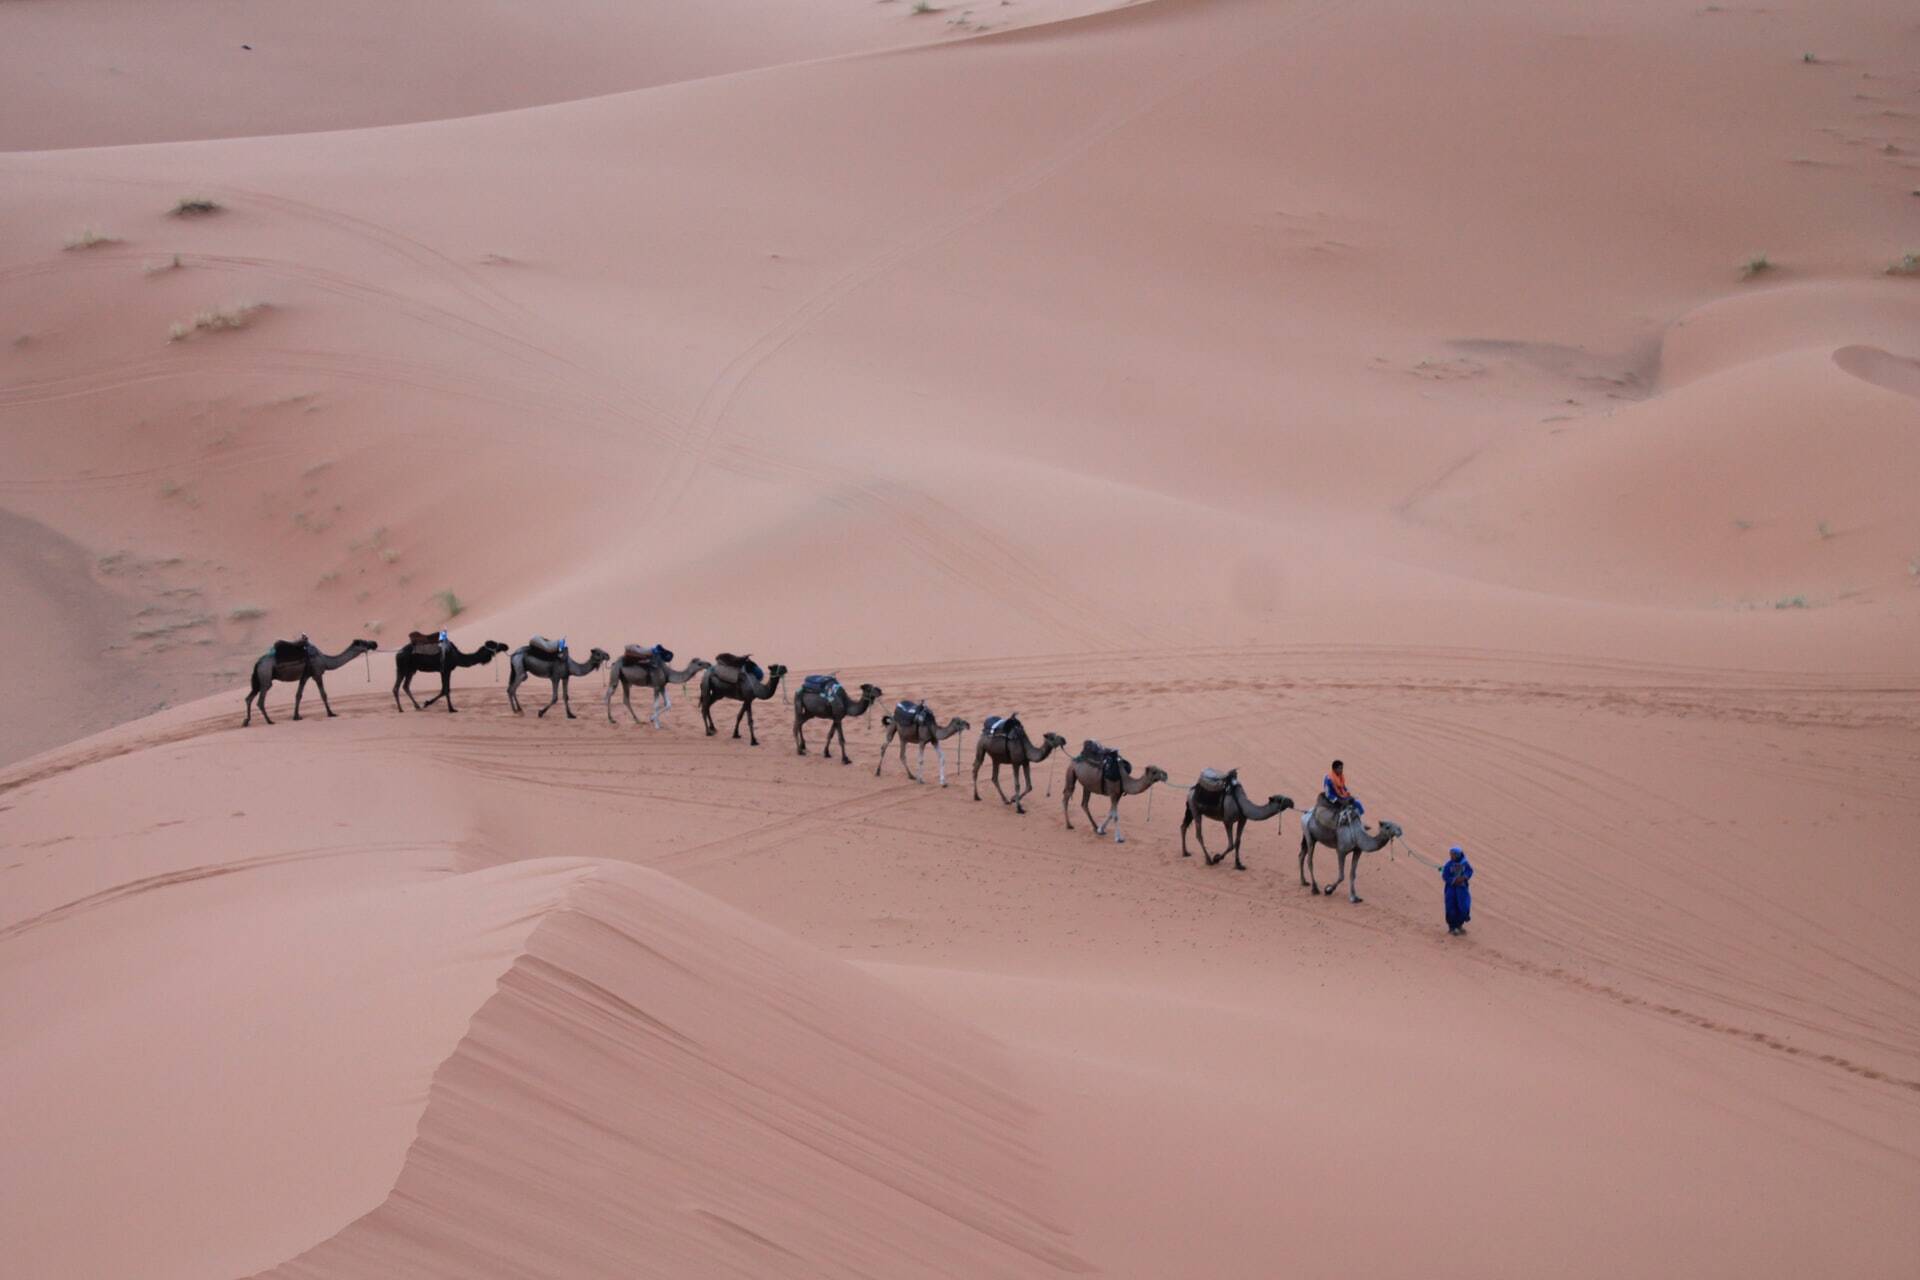 El paseo en camello en Marruecos Merzouga, es lo mejor que experimentará con nuestro tour de 12 dias desde Casablanca